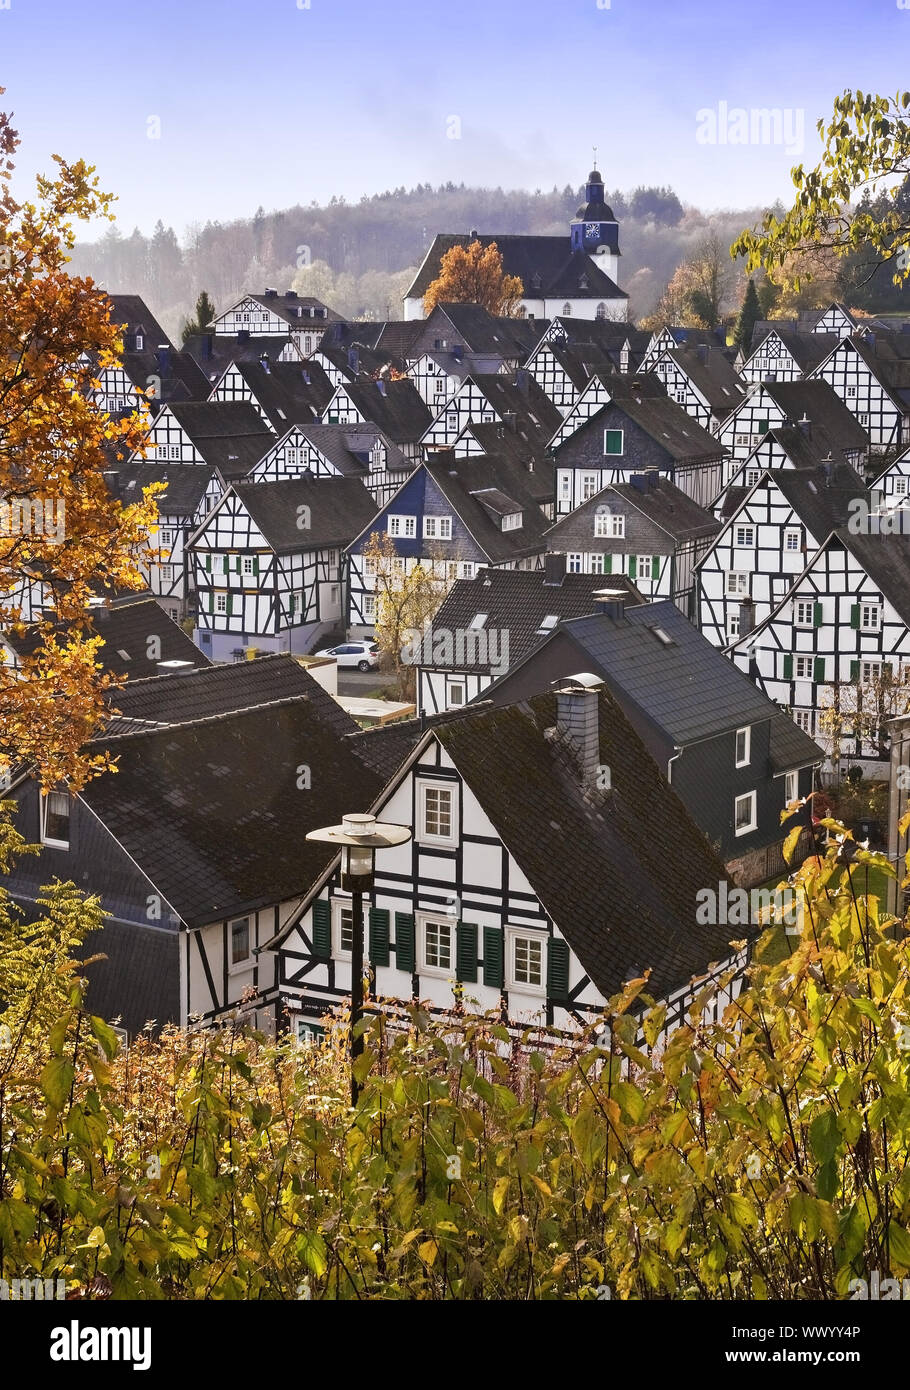 Modifier Vacances, centre-ville historique avec ses maisons à colombages en automne, Freudenberg, Allemagne Banque D'Images